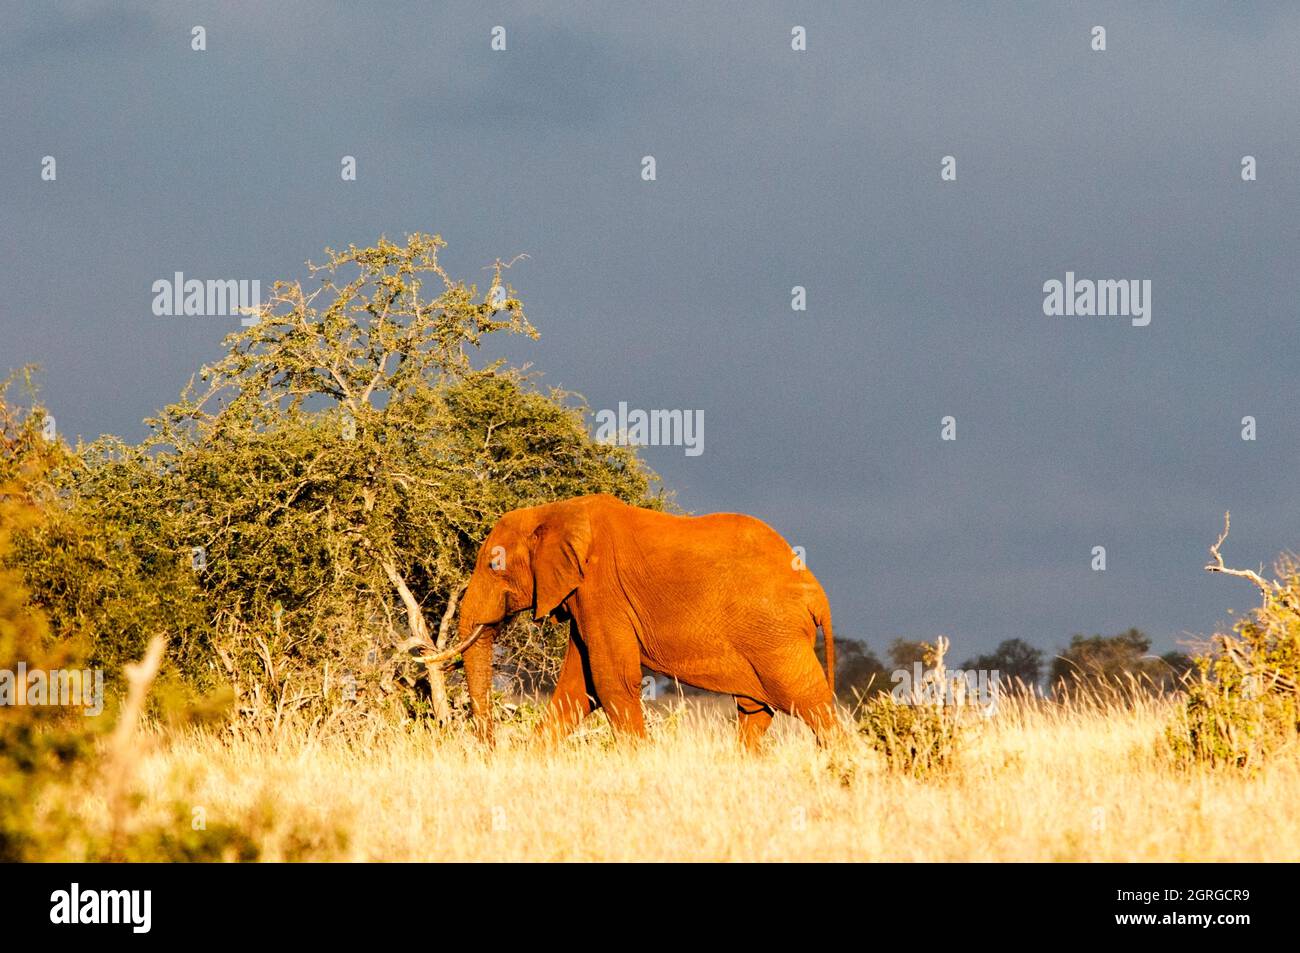 Kenya, Taita Hills Wildlife Sanctuary, One Female Elephant (Loxodonta africana) Stock Photo